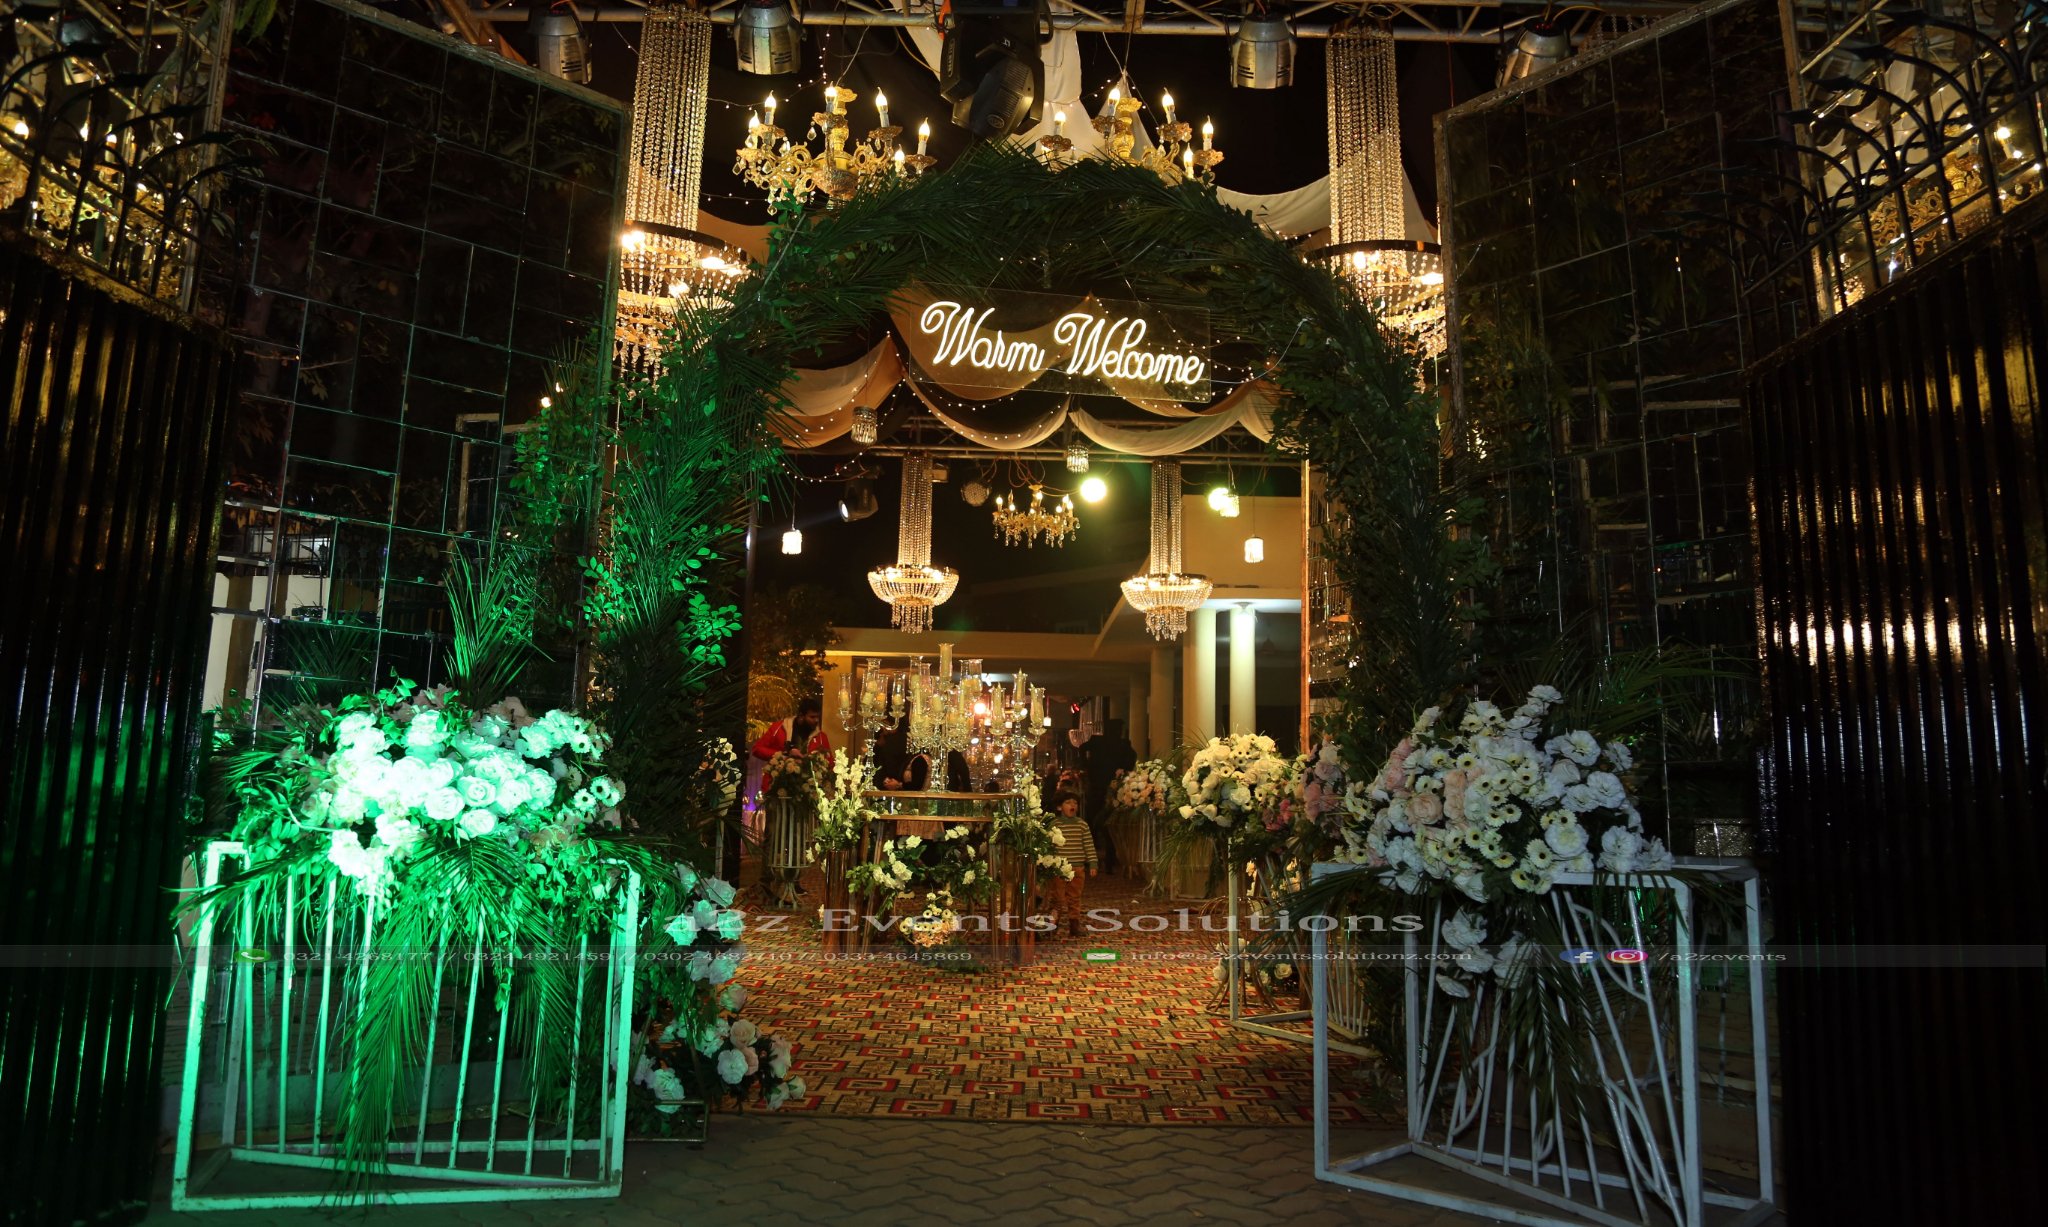 floral entrance, arch decor